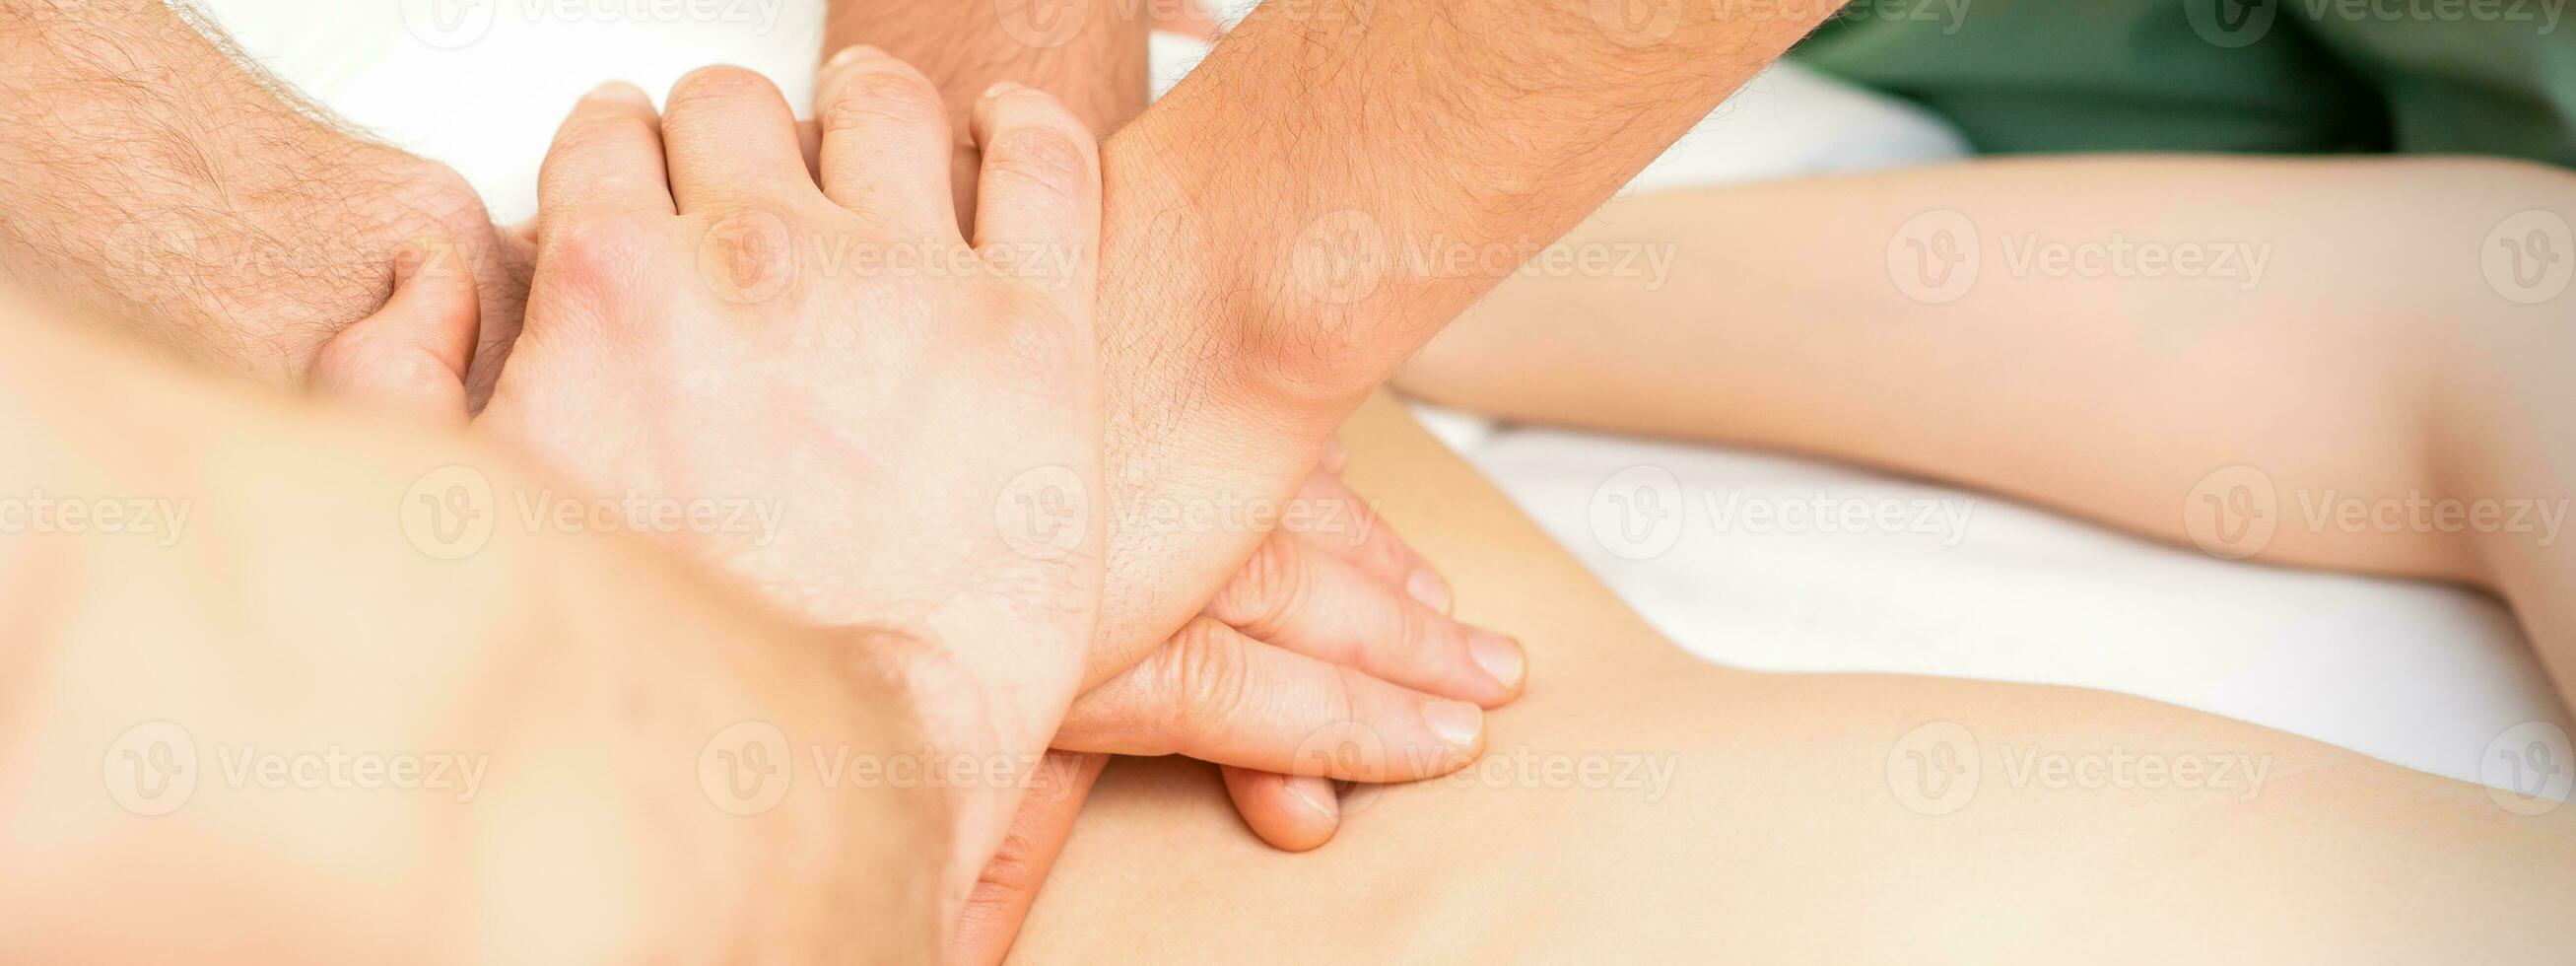 mujer recibiendo un masaje en la espalda foto